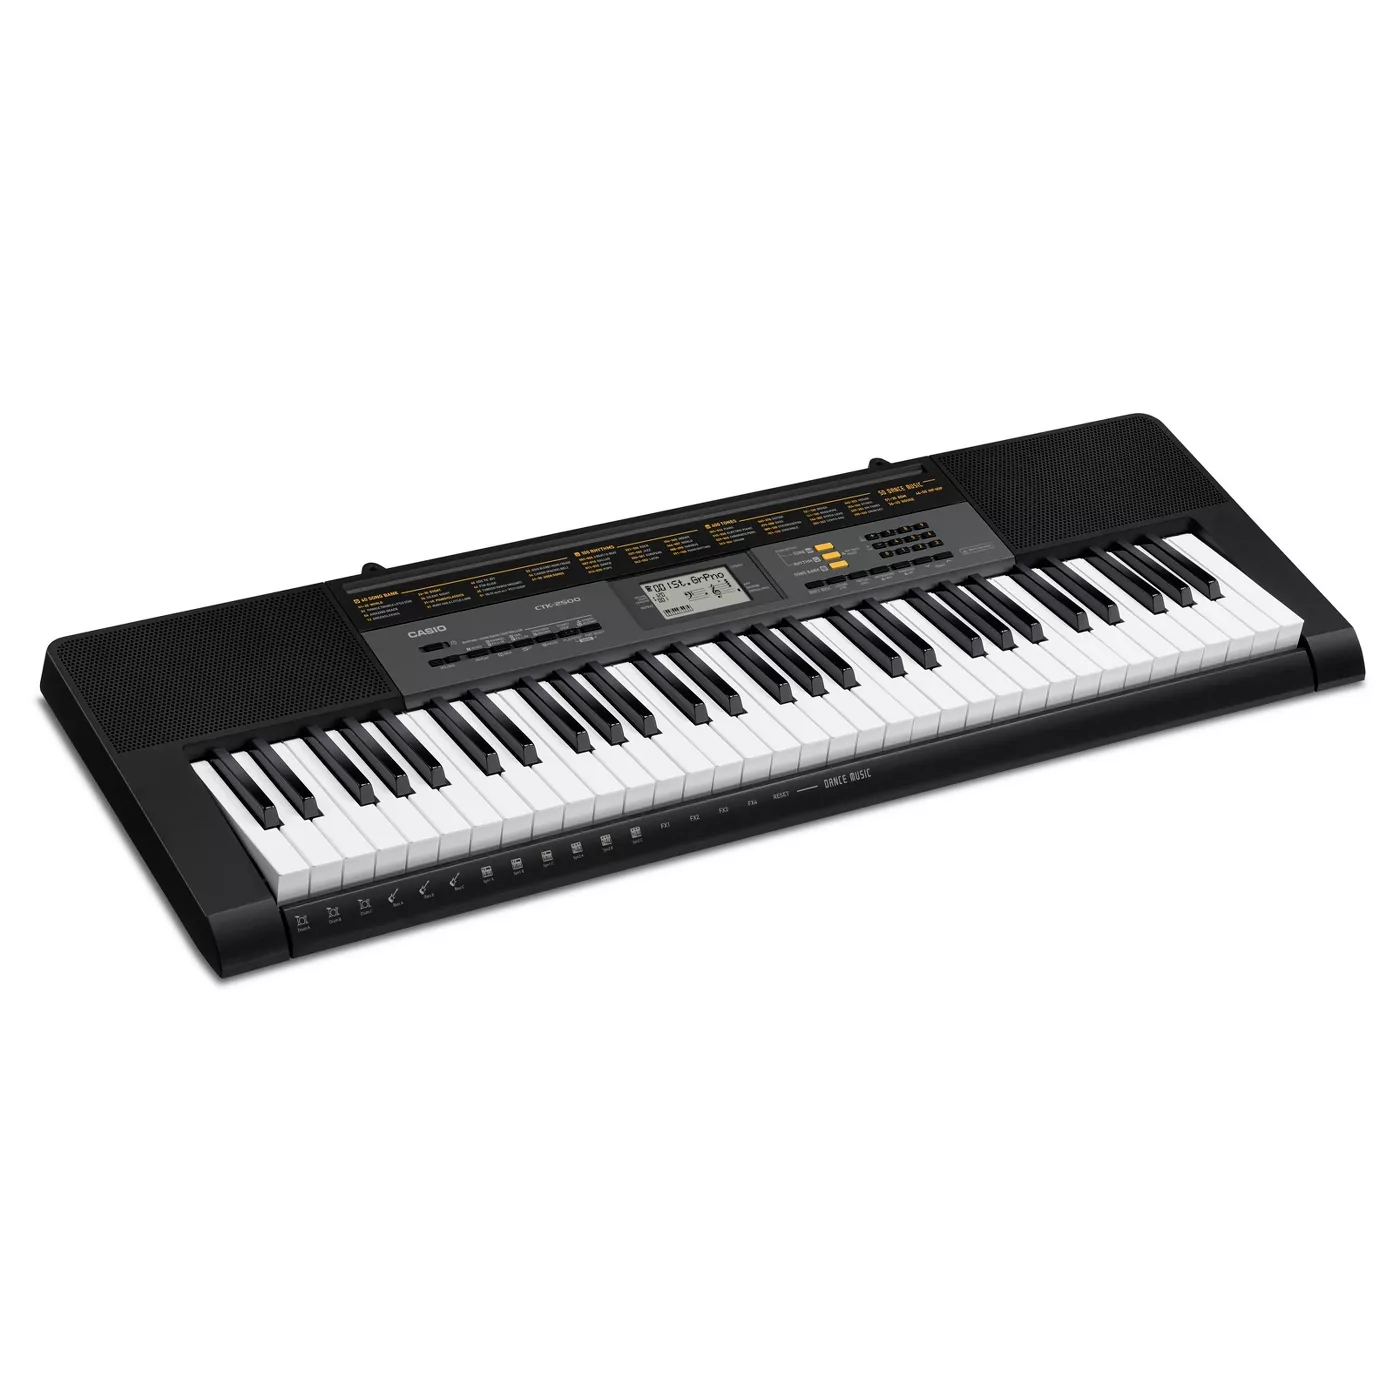 Casio keyboard, 61 keys, CTK.2500